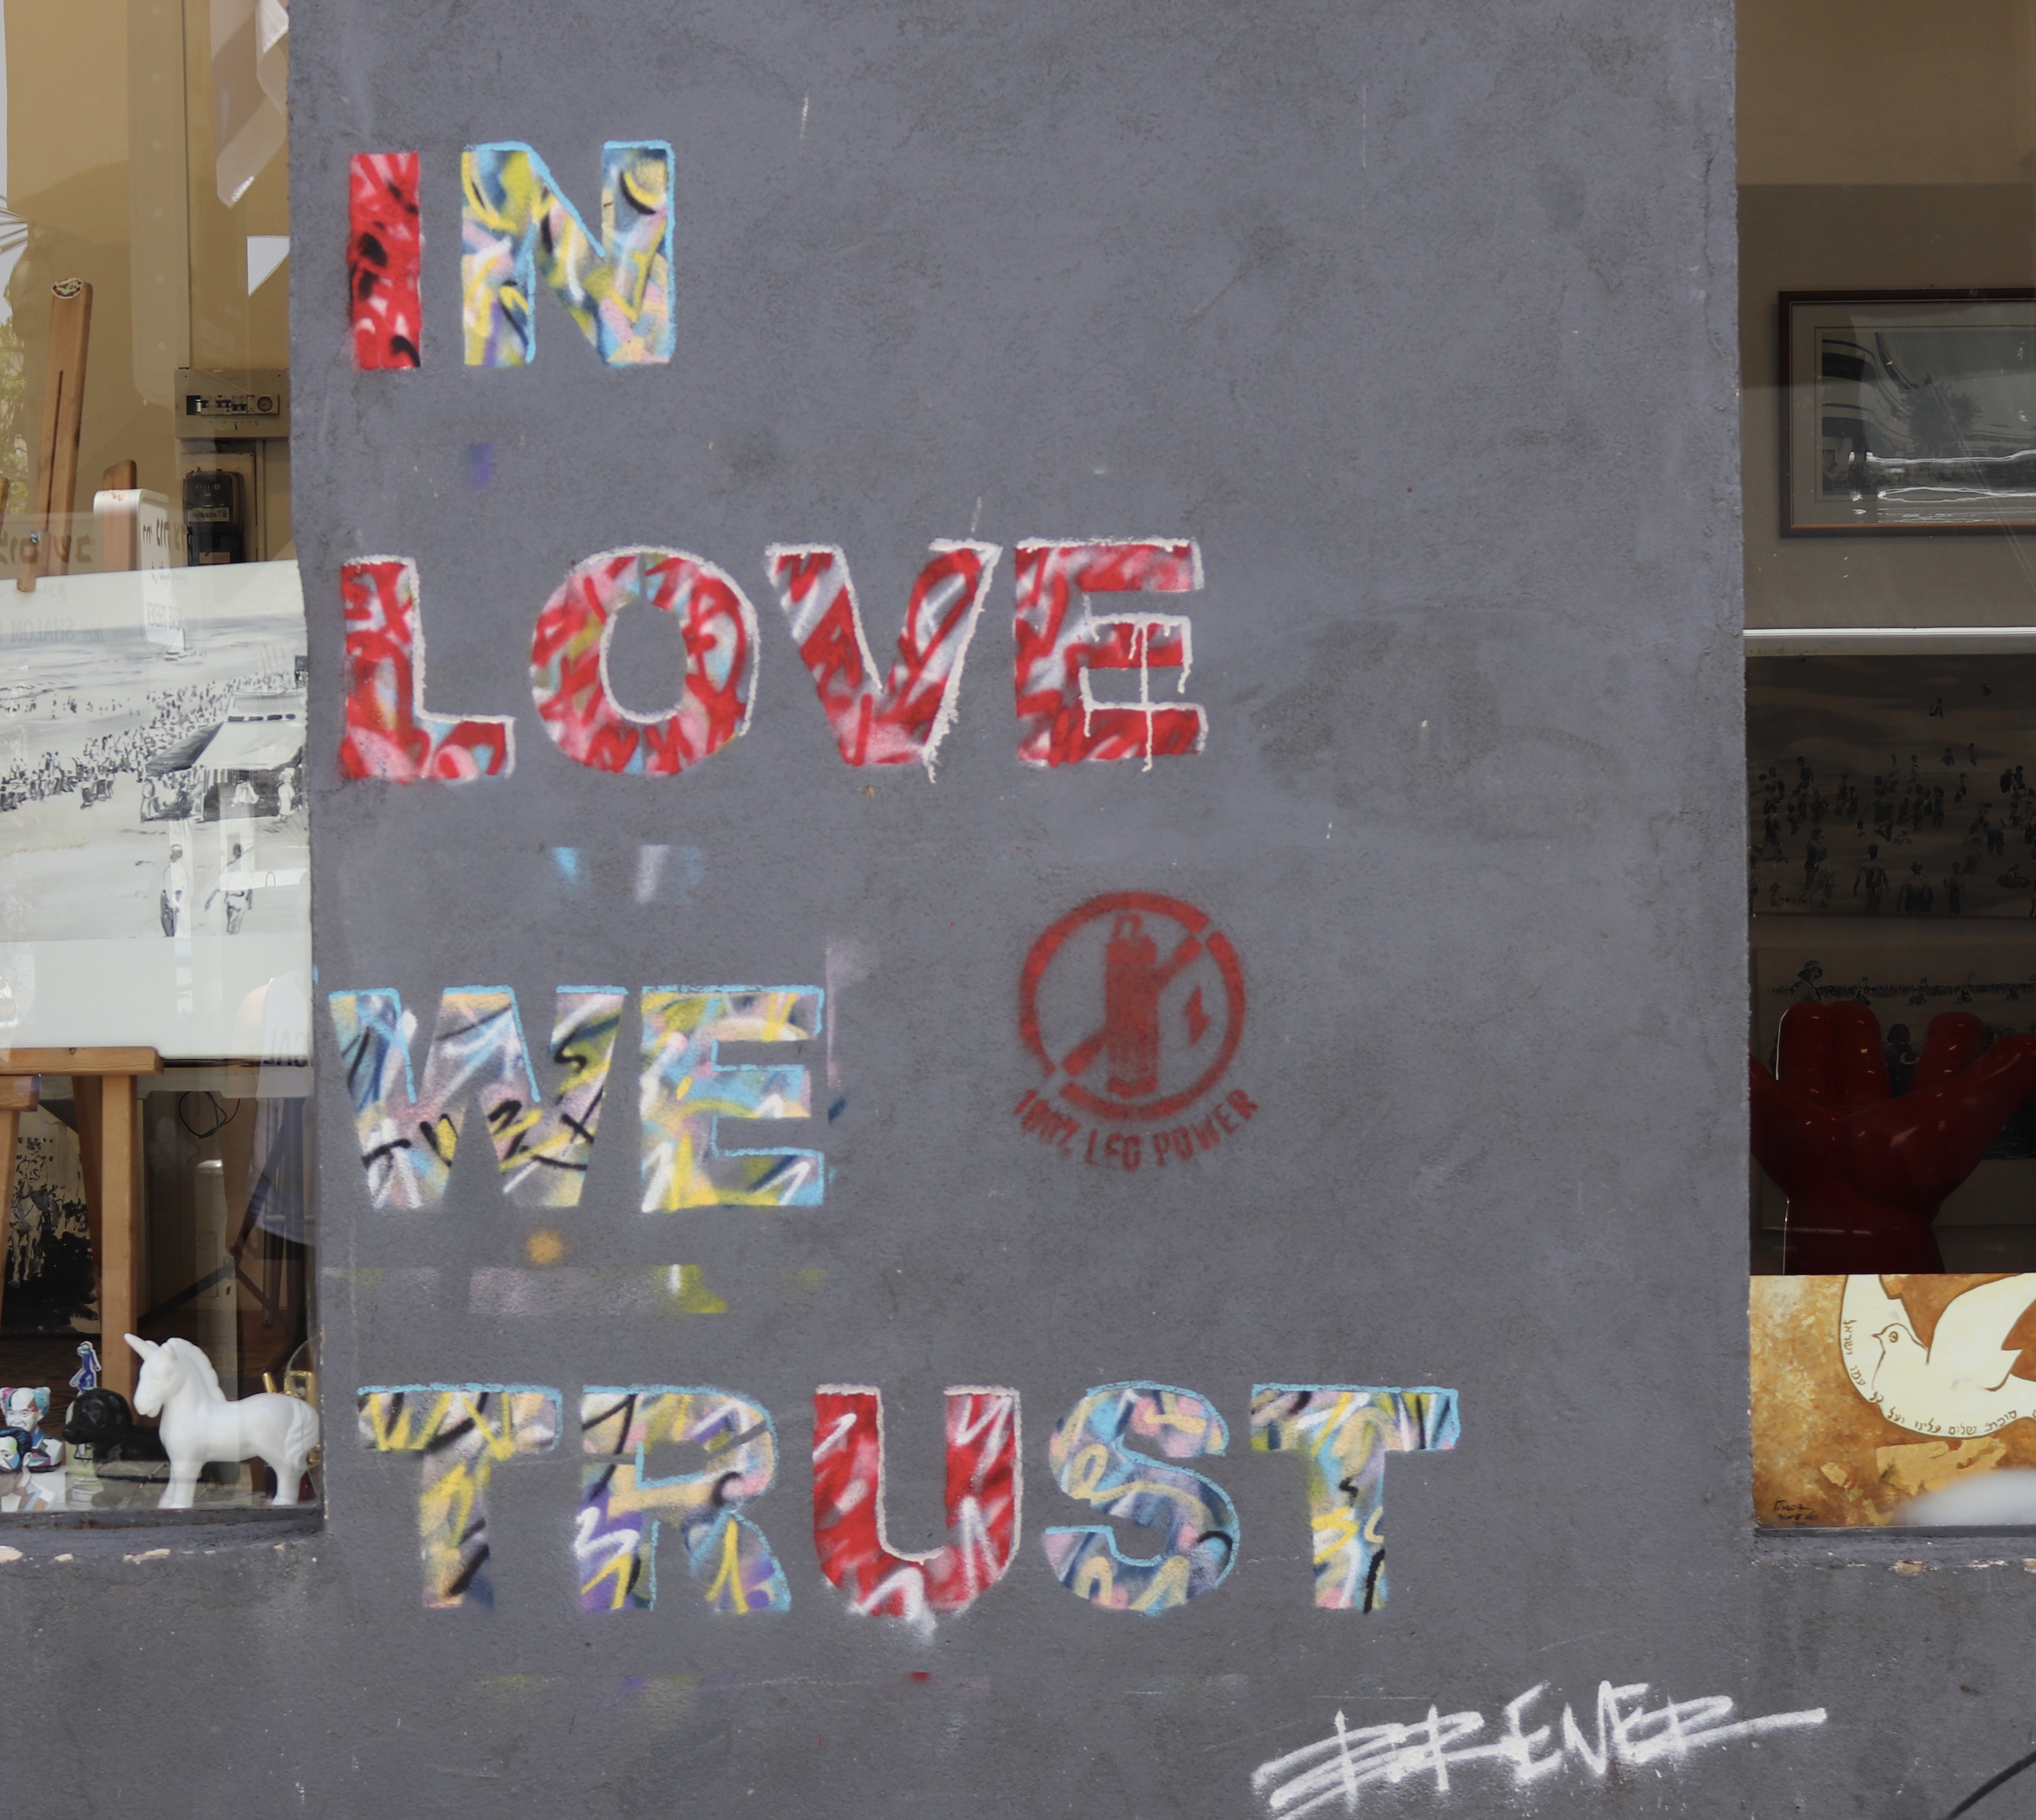 In Love we trust graffiti